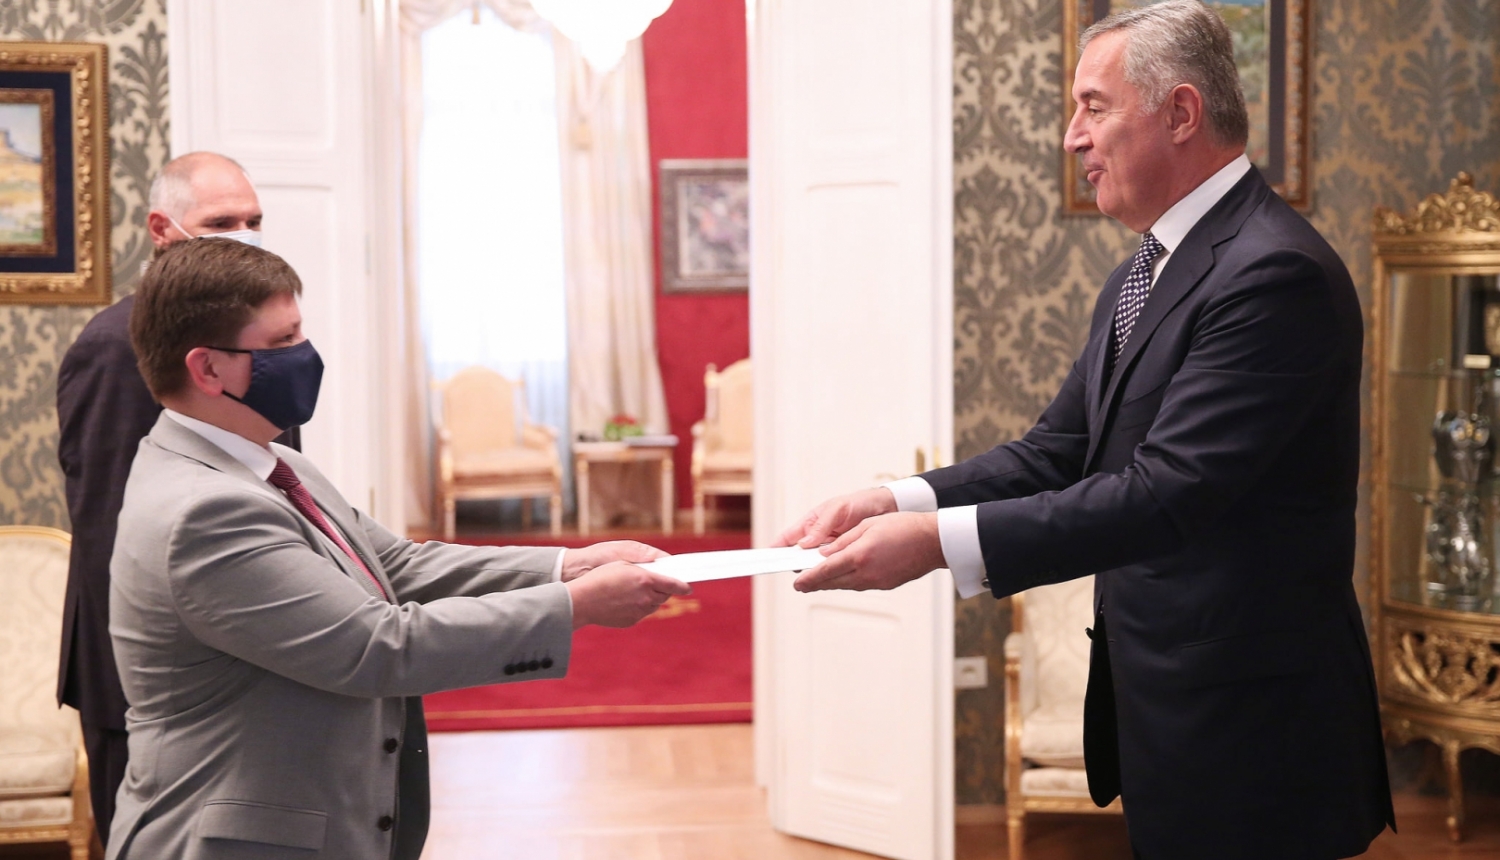 Latvijas vēstniece Agnese Kalniņa iesniedz akreditācijas vēstuli Melnkalnes prezidentam